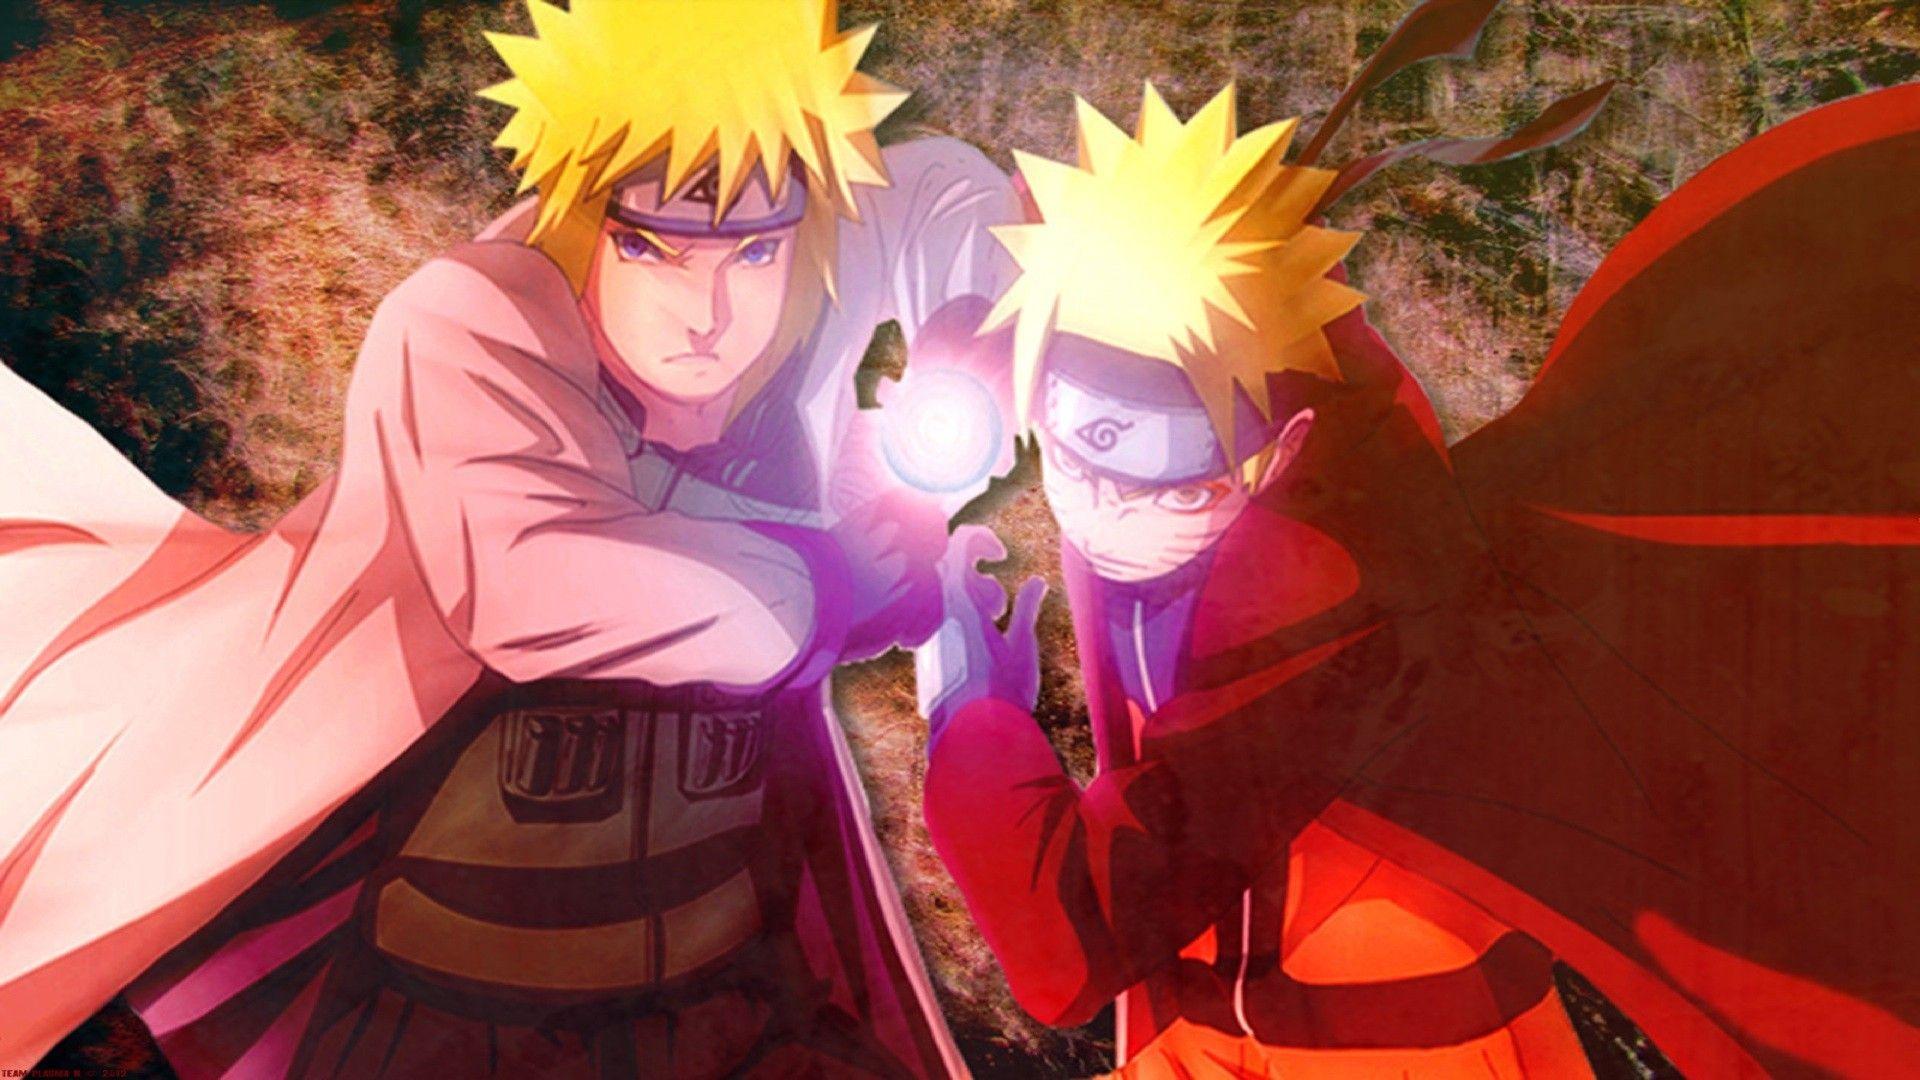 Naruto Minato Wallpaper Picture • dodskypict